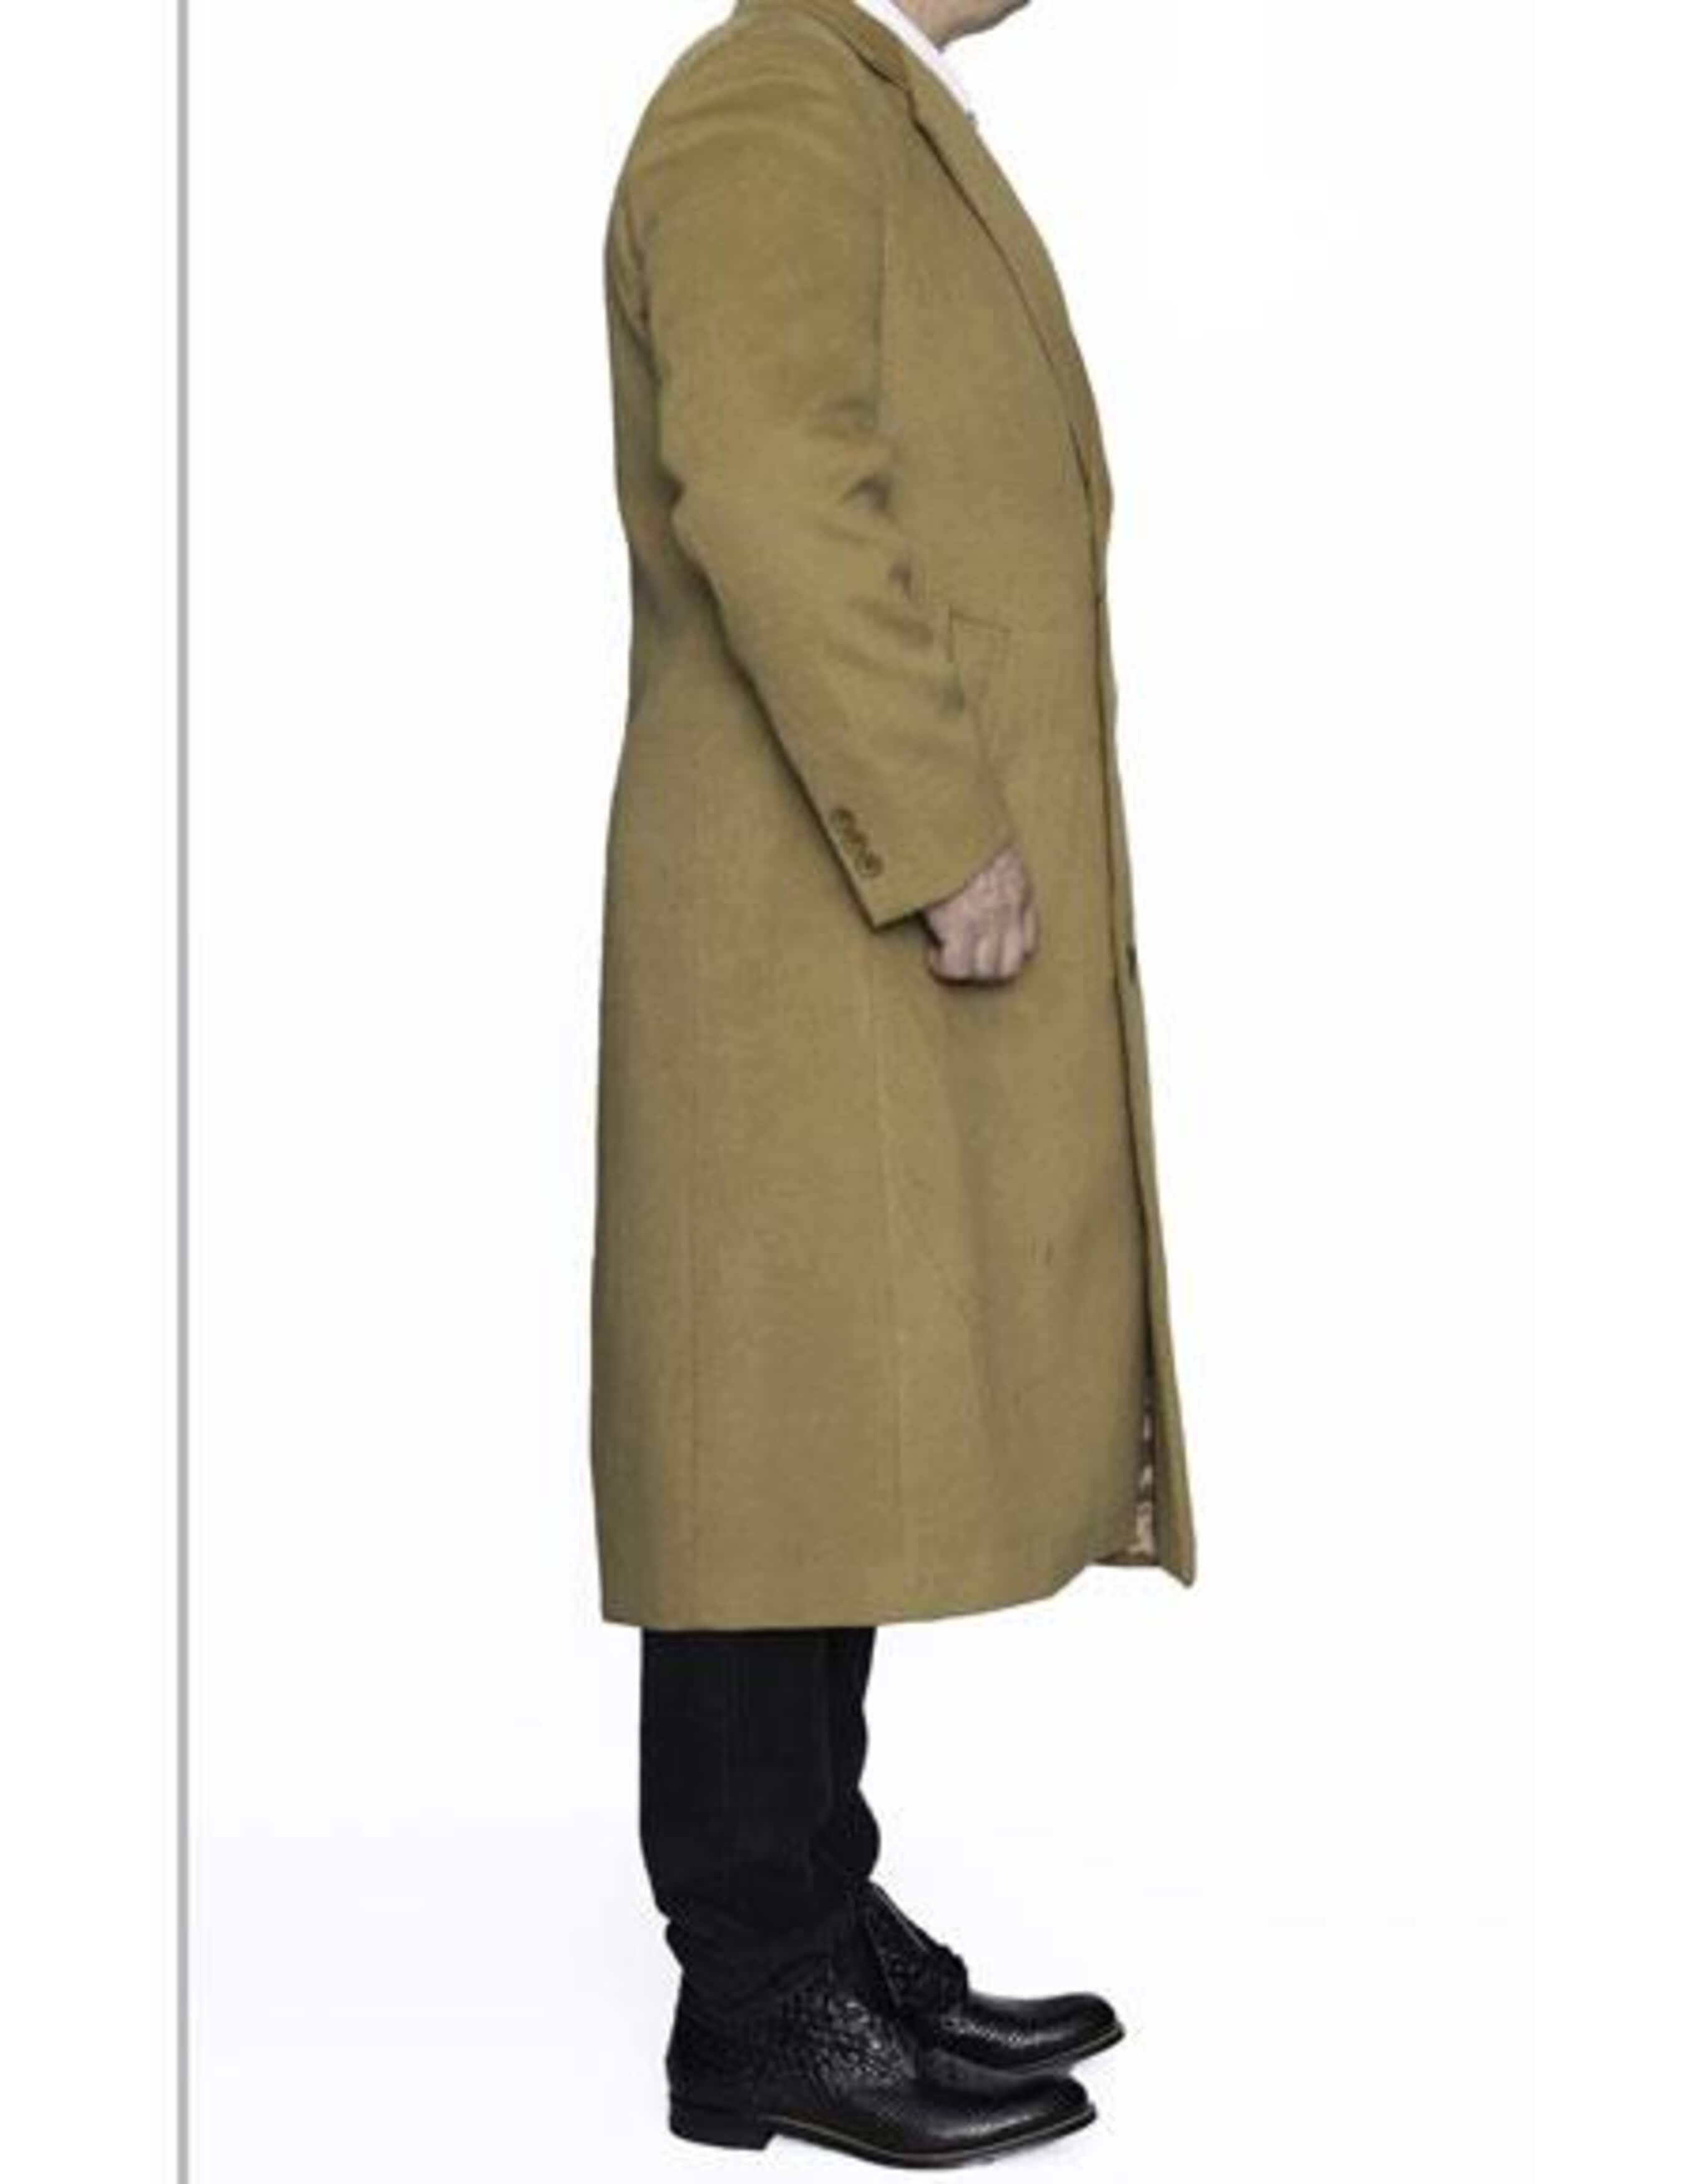 3 Button Camel Full Length Wool Dress Ankle length Top Coat/Overcoat - Mens Overcoat